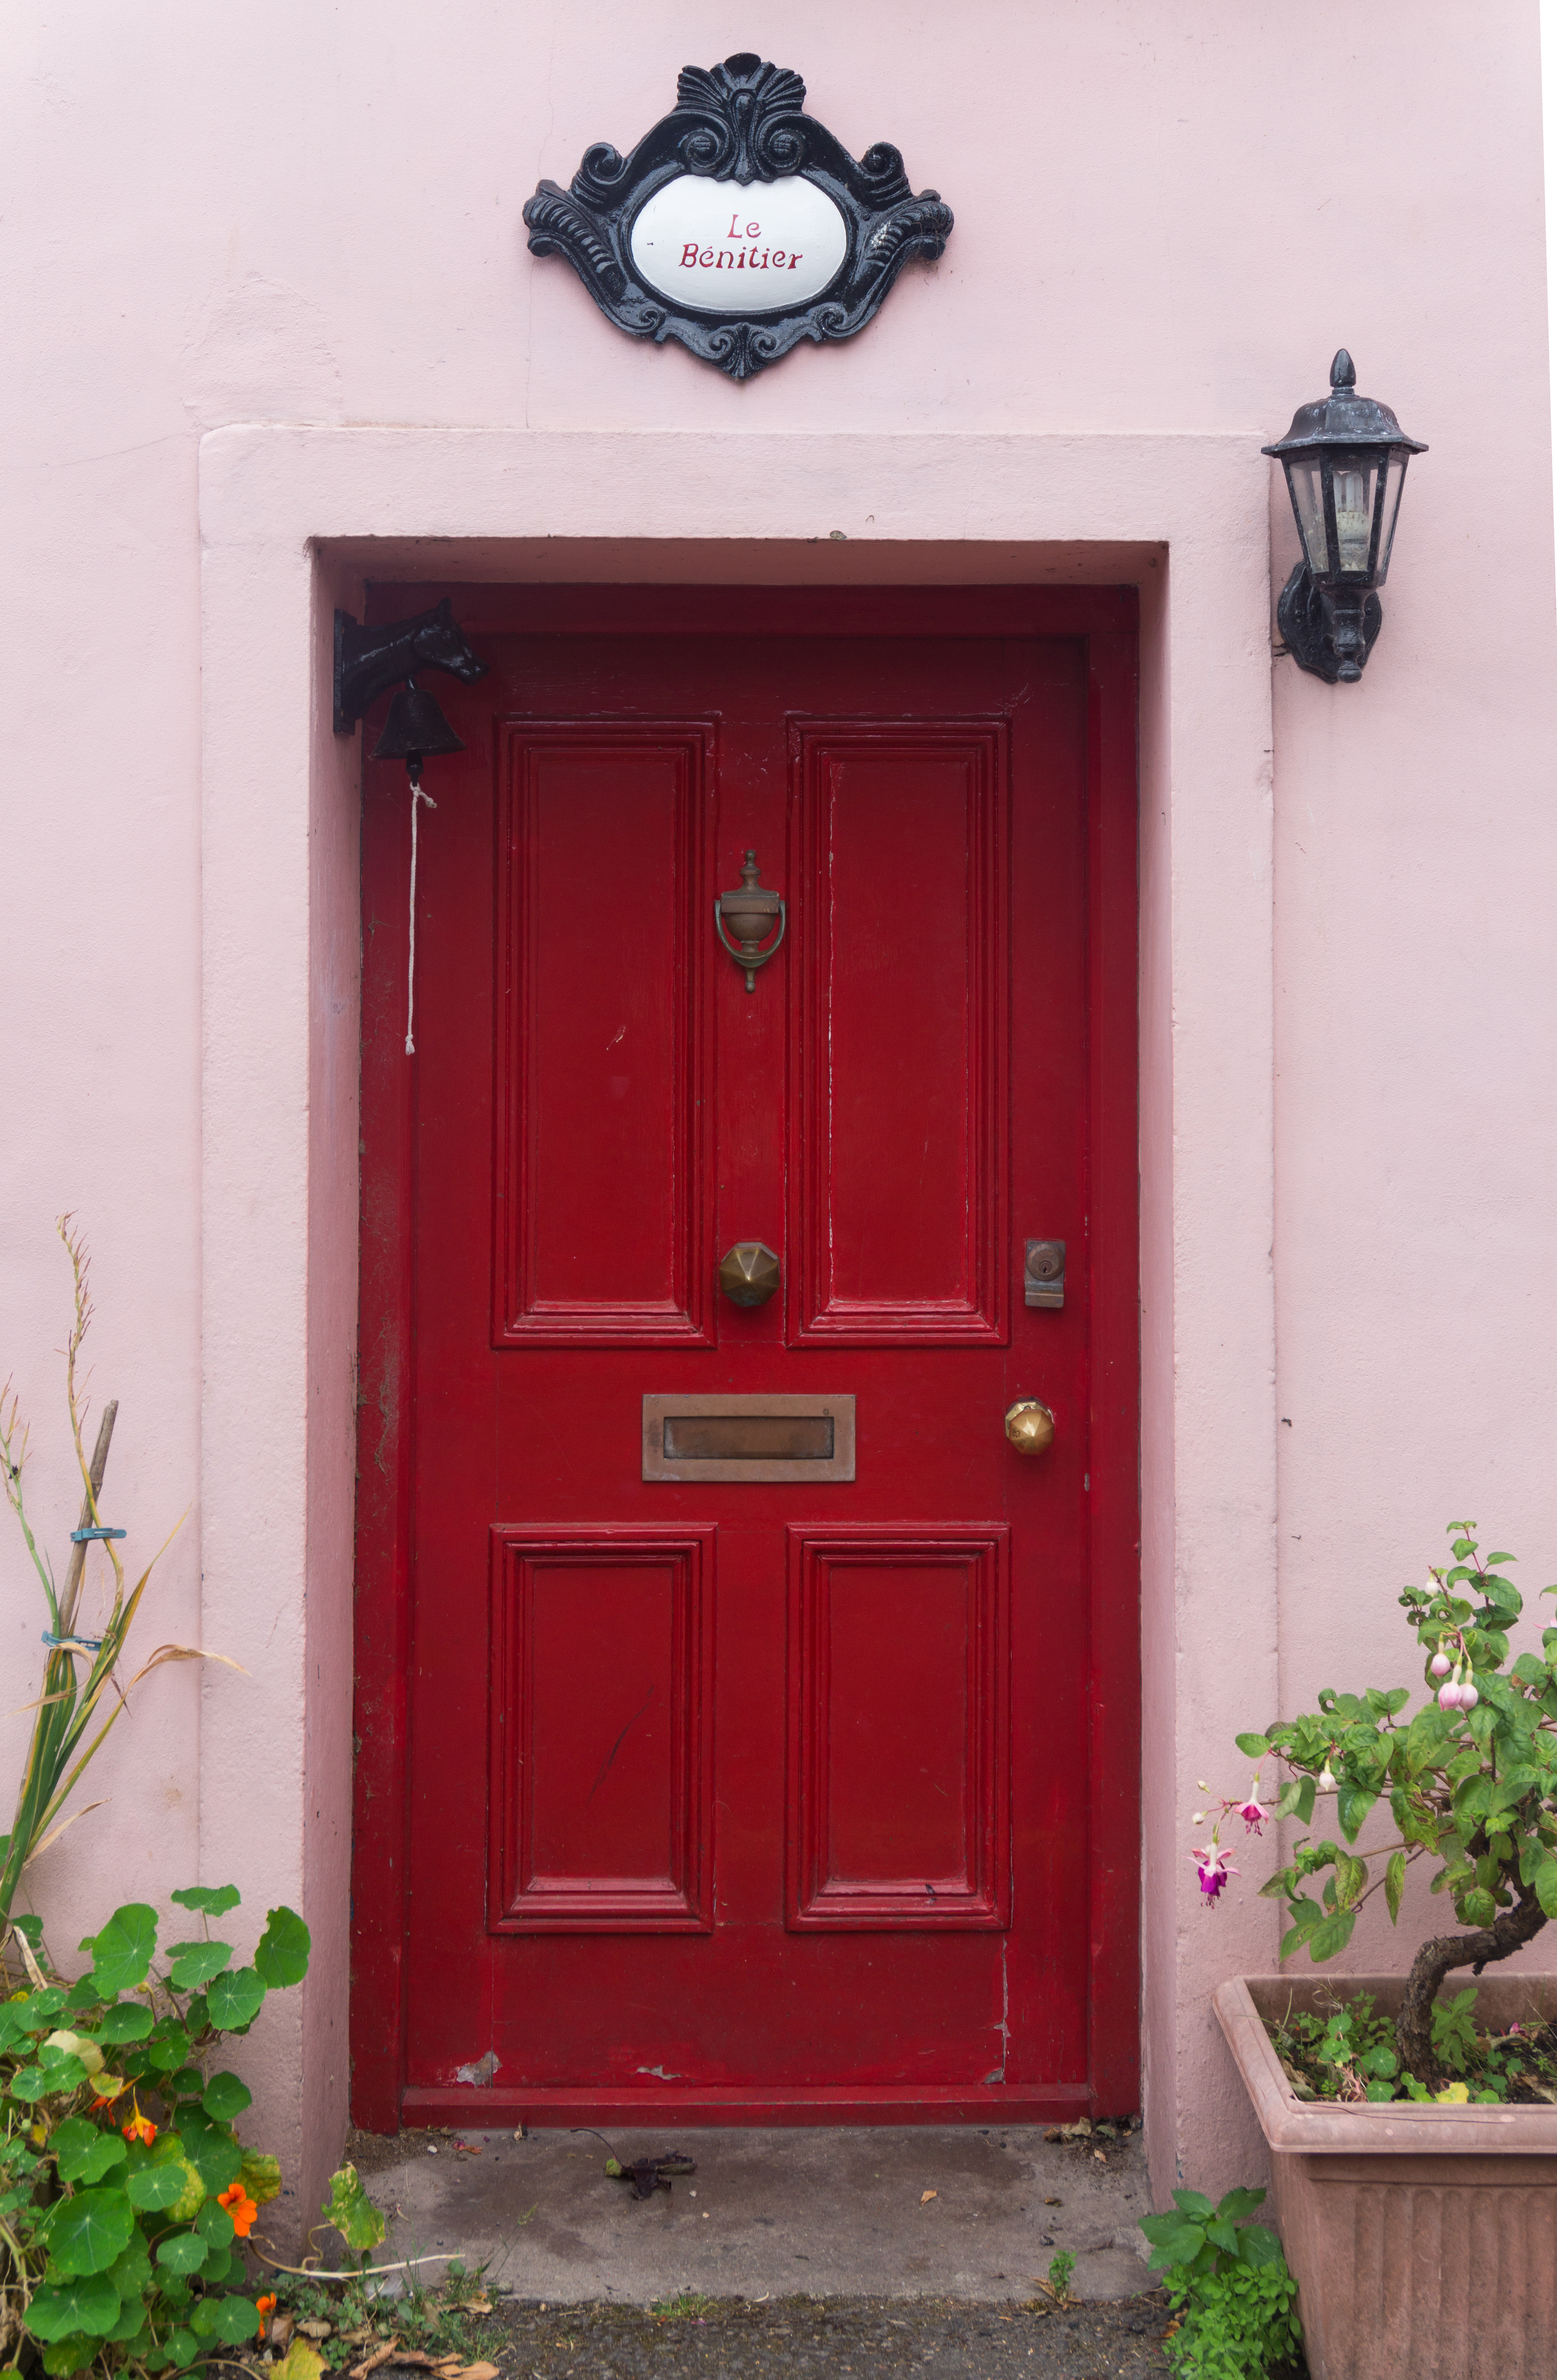 Original red wooden door - Doors - Texturify - Free textures